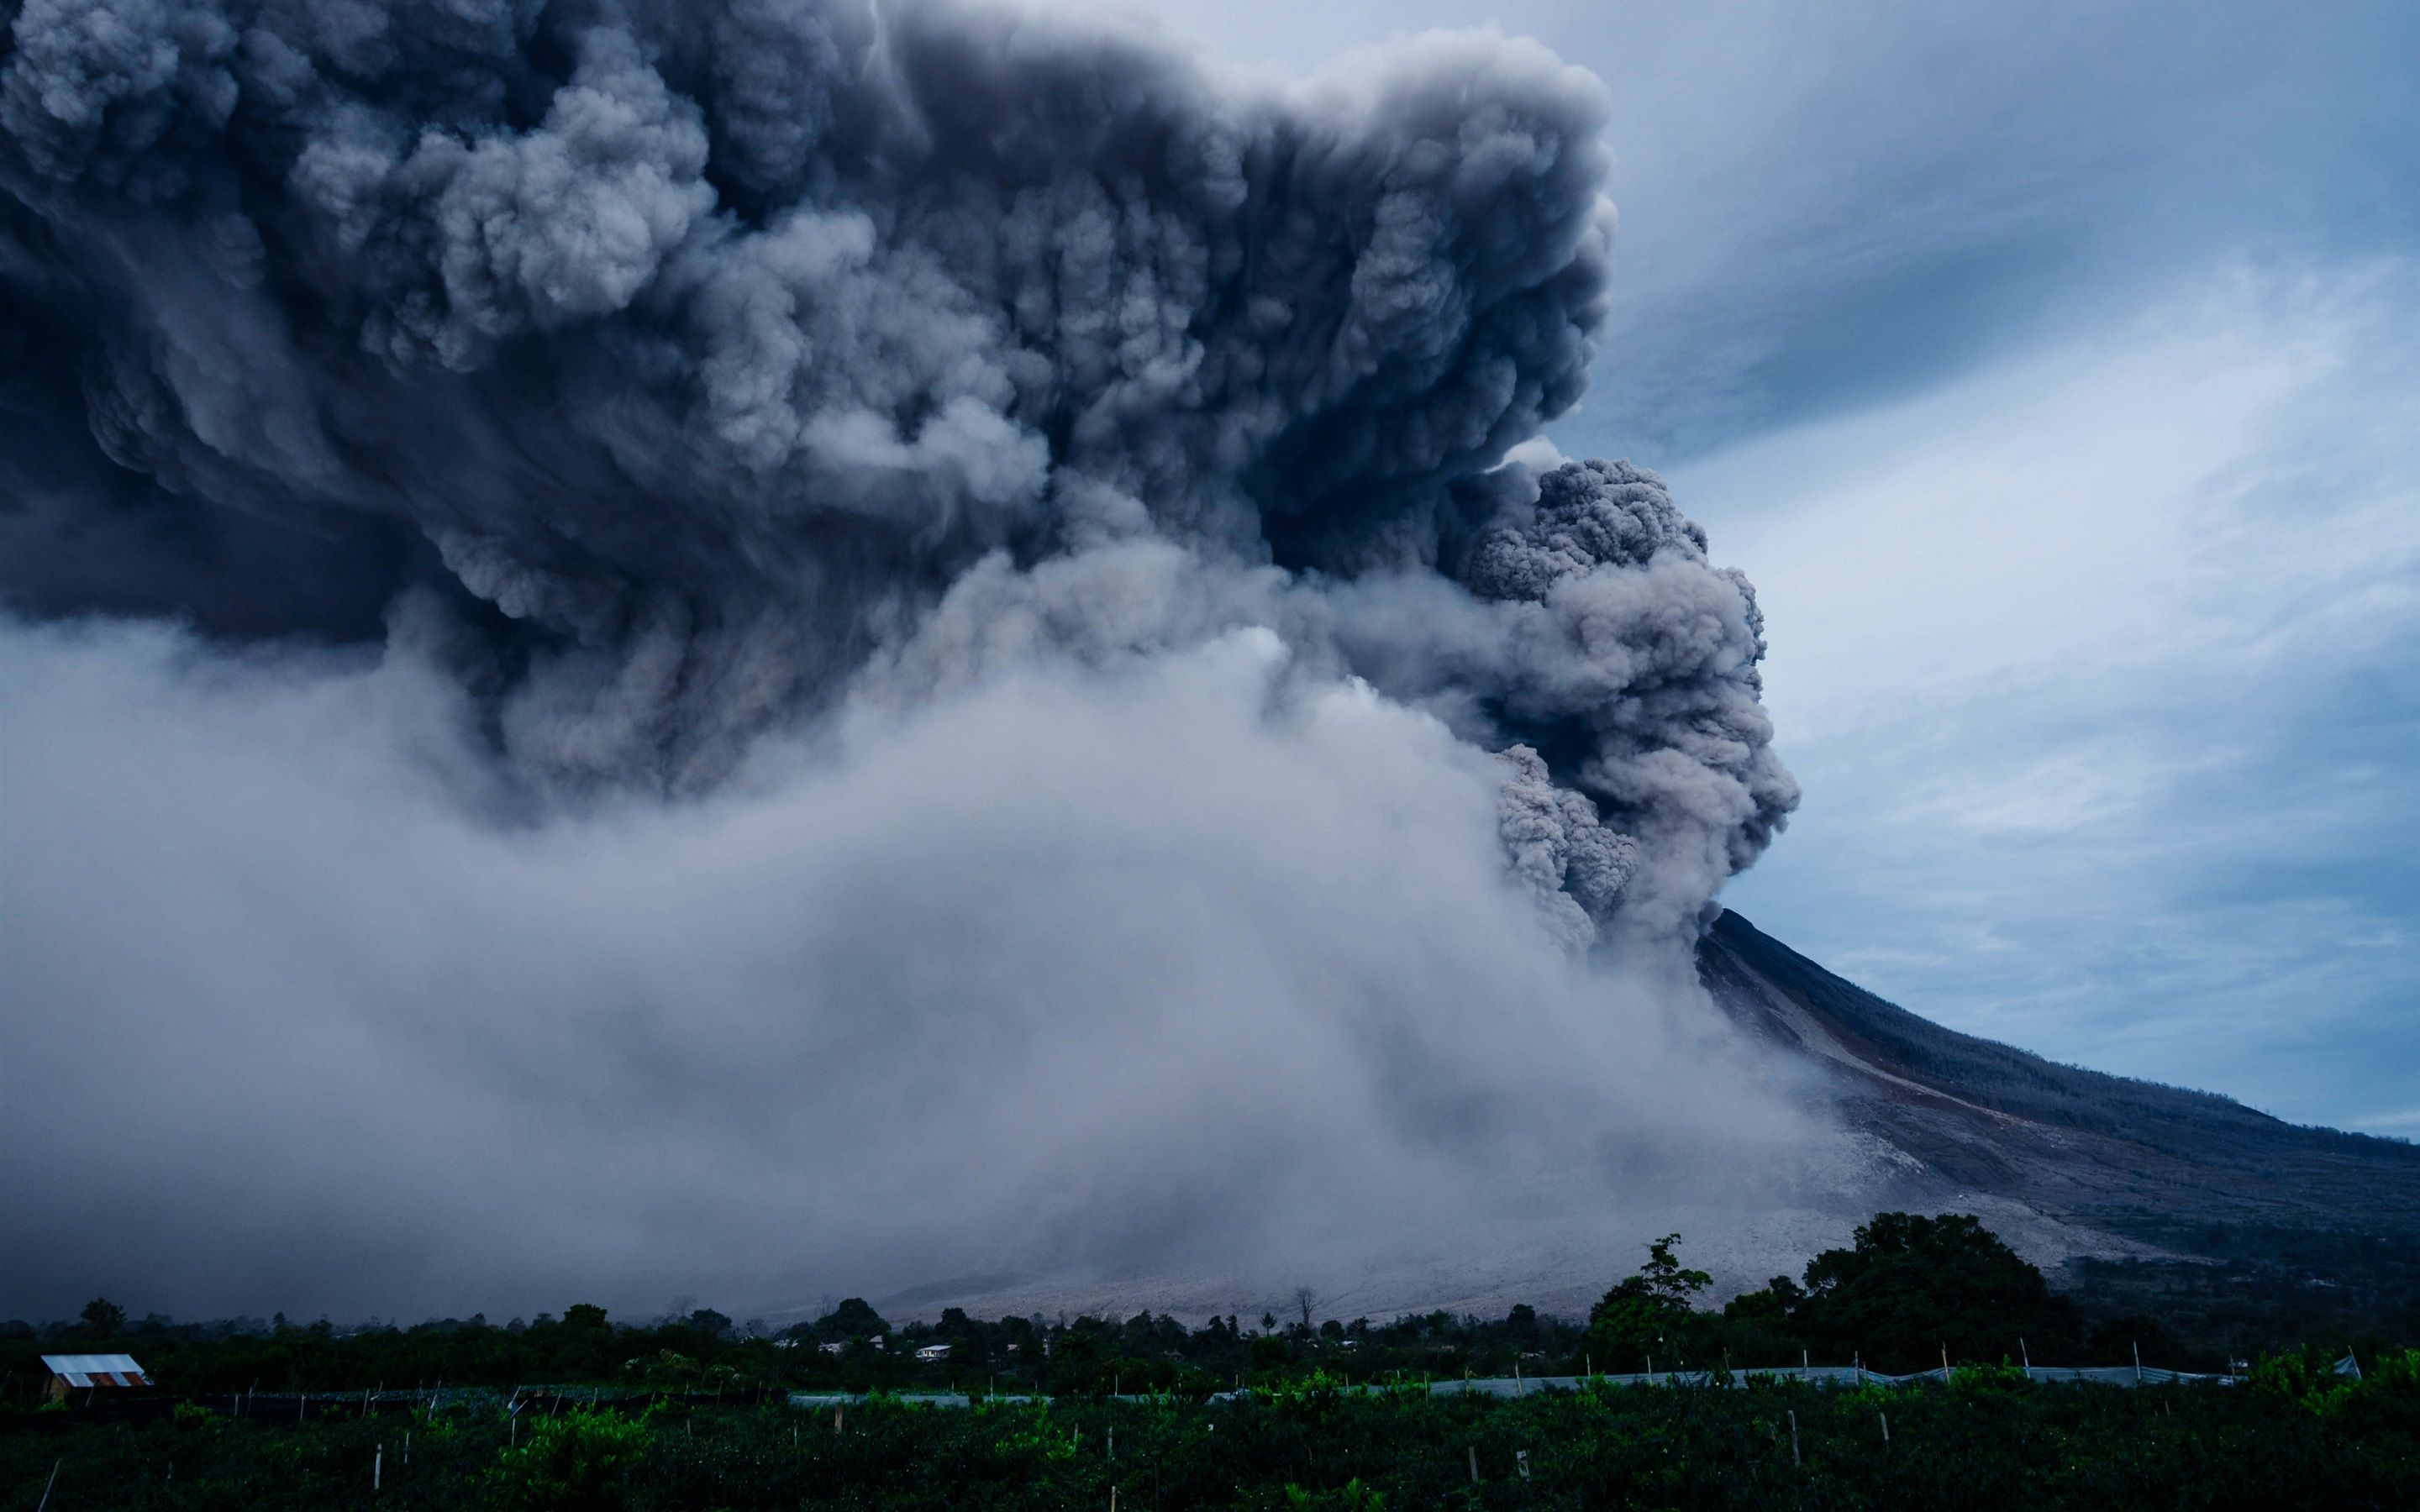 Природное бедствие произошло. Извержение вулкана Шивелуч. Извержение вулкана Тонга. Вулкан Шивелуч на Камчатке. Шивелуч вулкан извержение последнее.